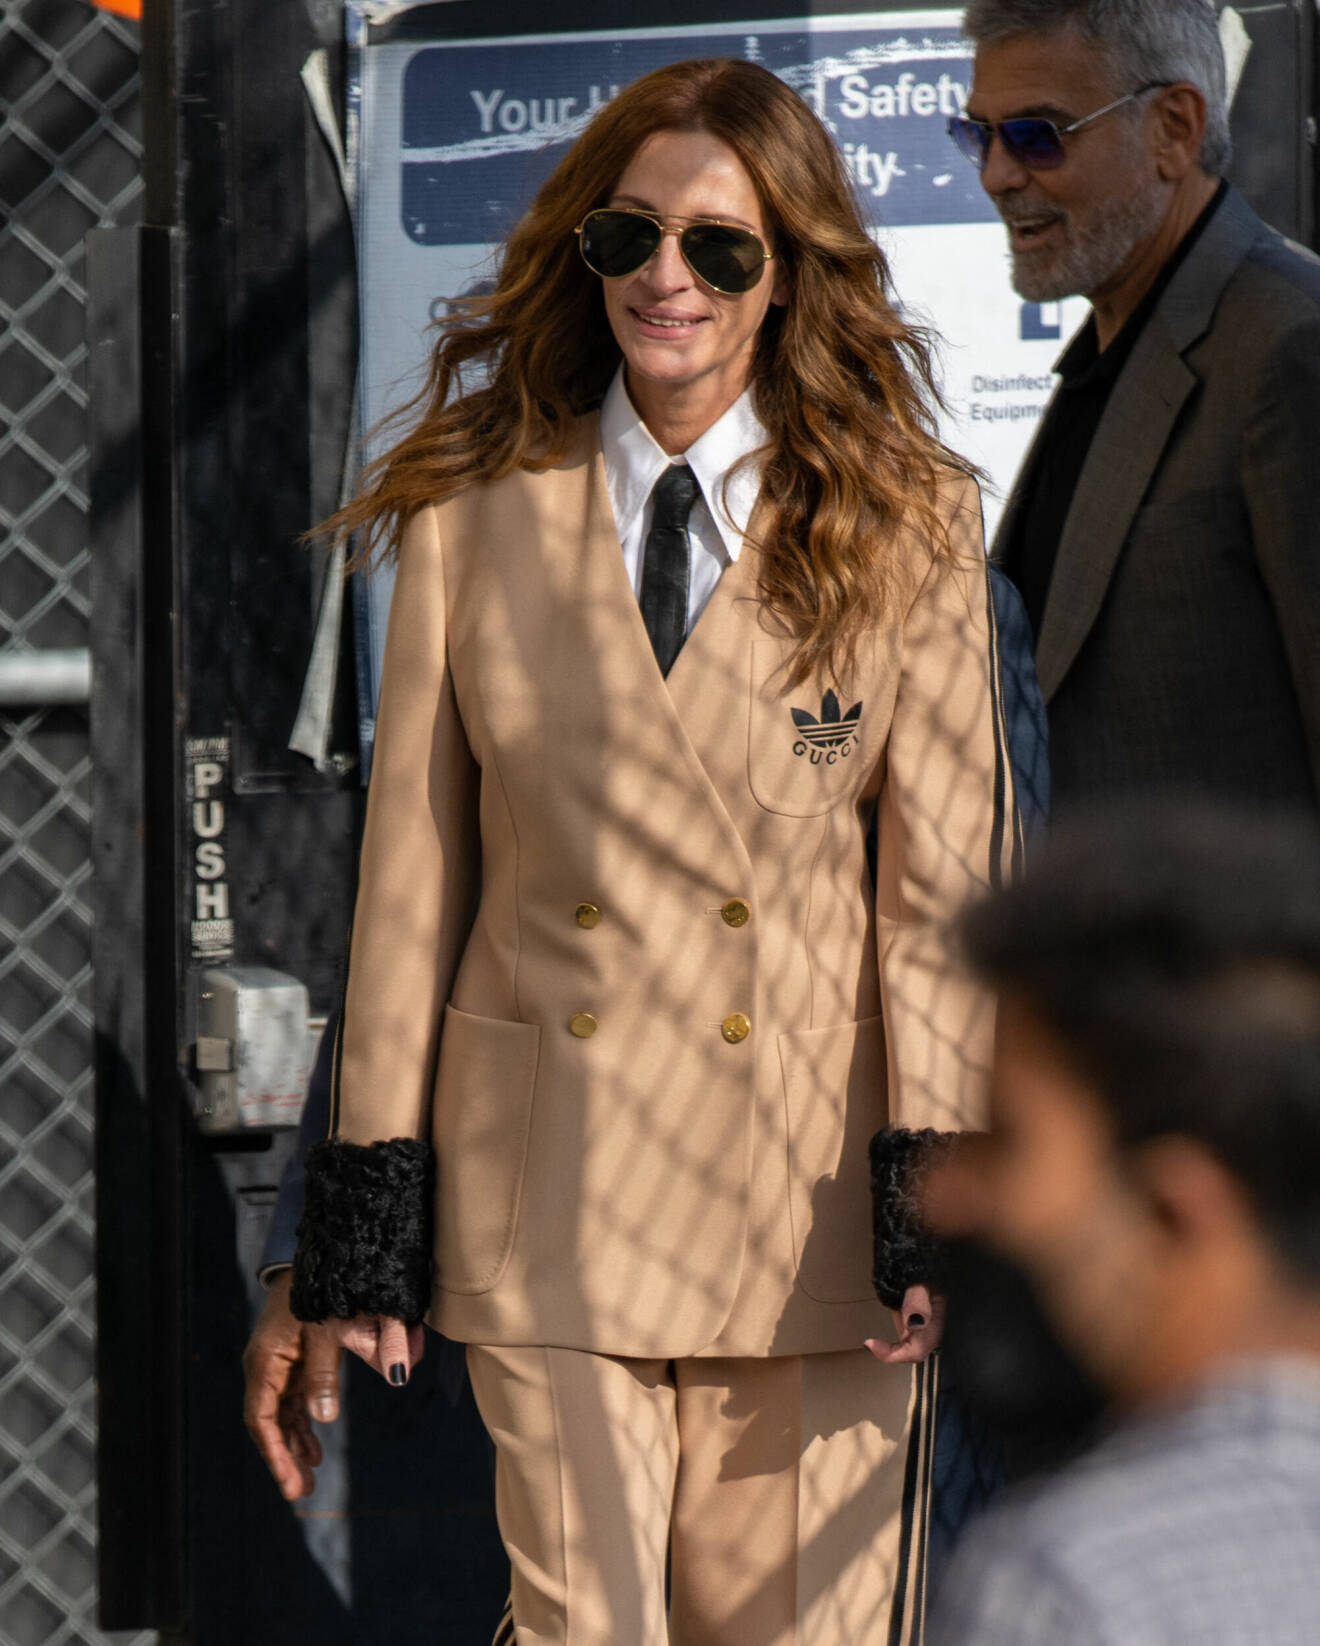 Julia Roberts iklädd beige kostym från Guccis samarbete med Adidas.